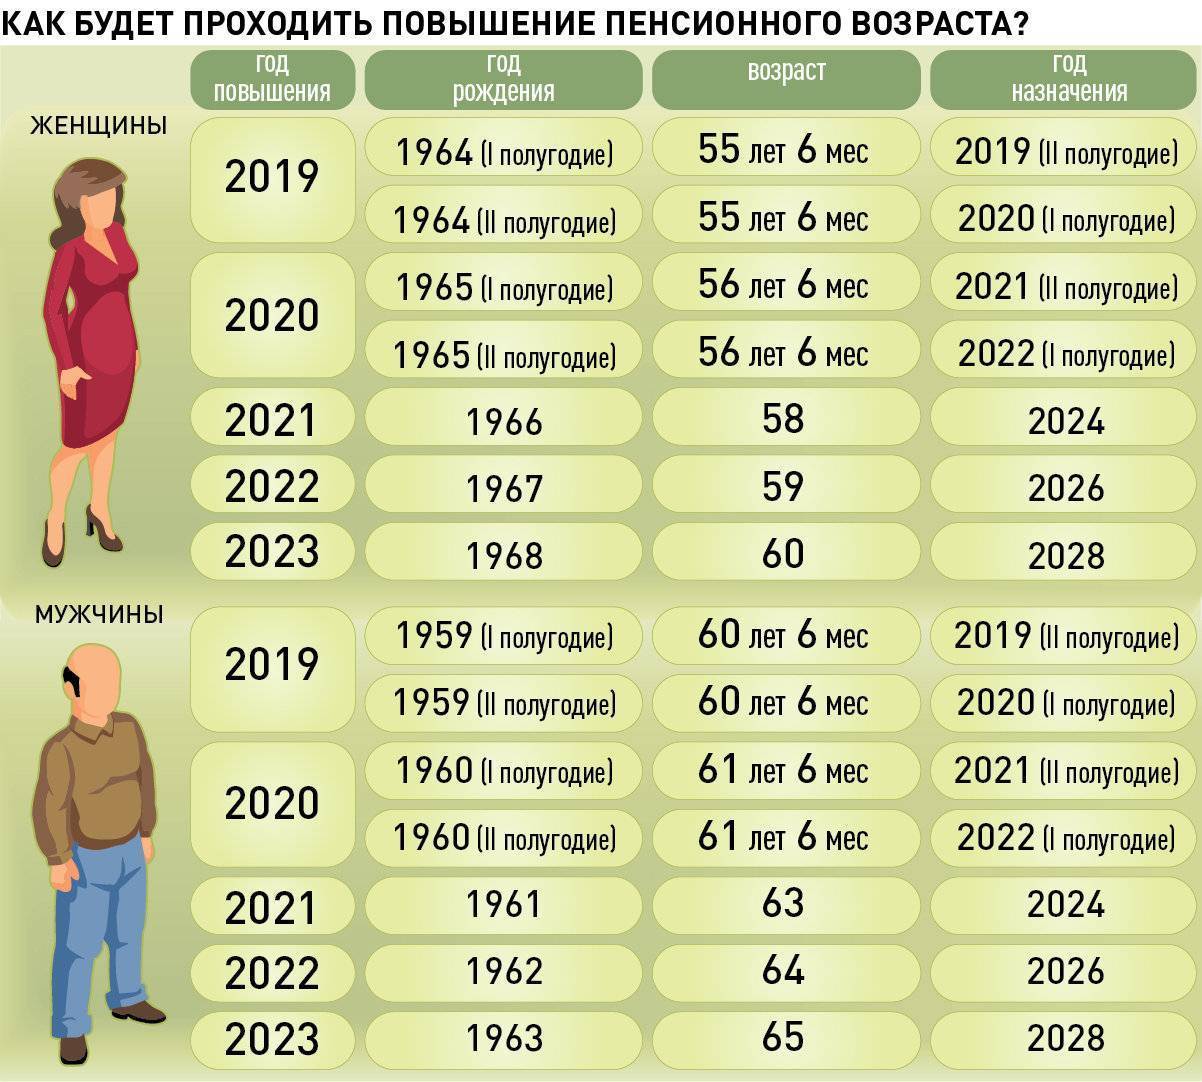 Какой пенсионный возраст мужчин и женщин в россии, будет ли отмена реформы и возраста в 2021 году — последние новости